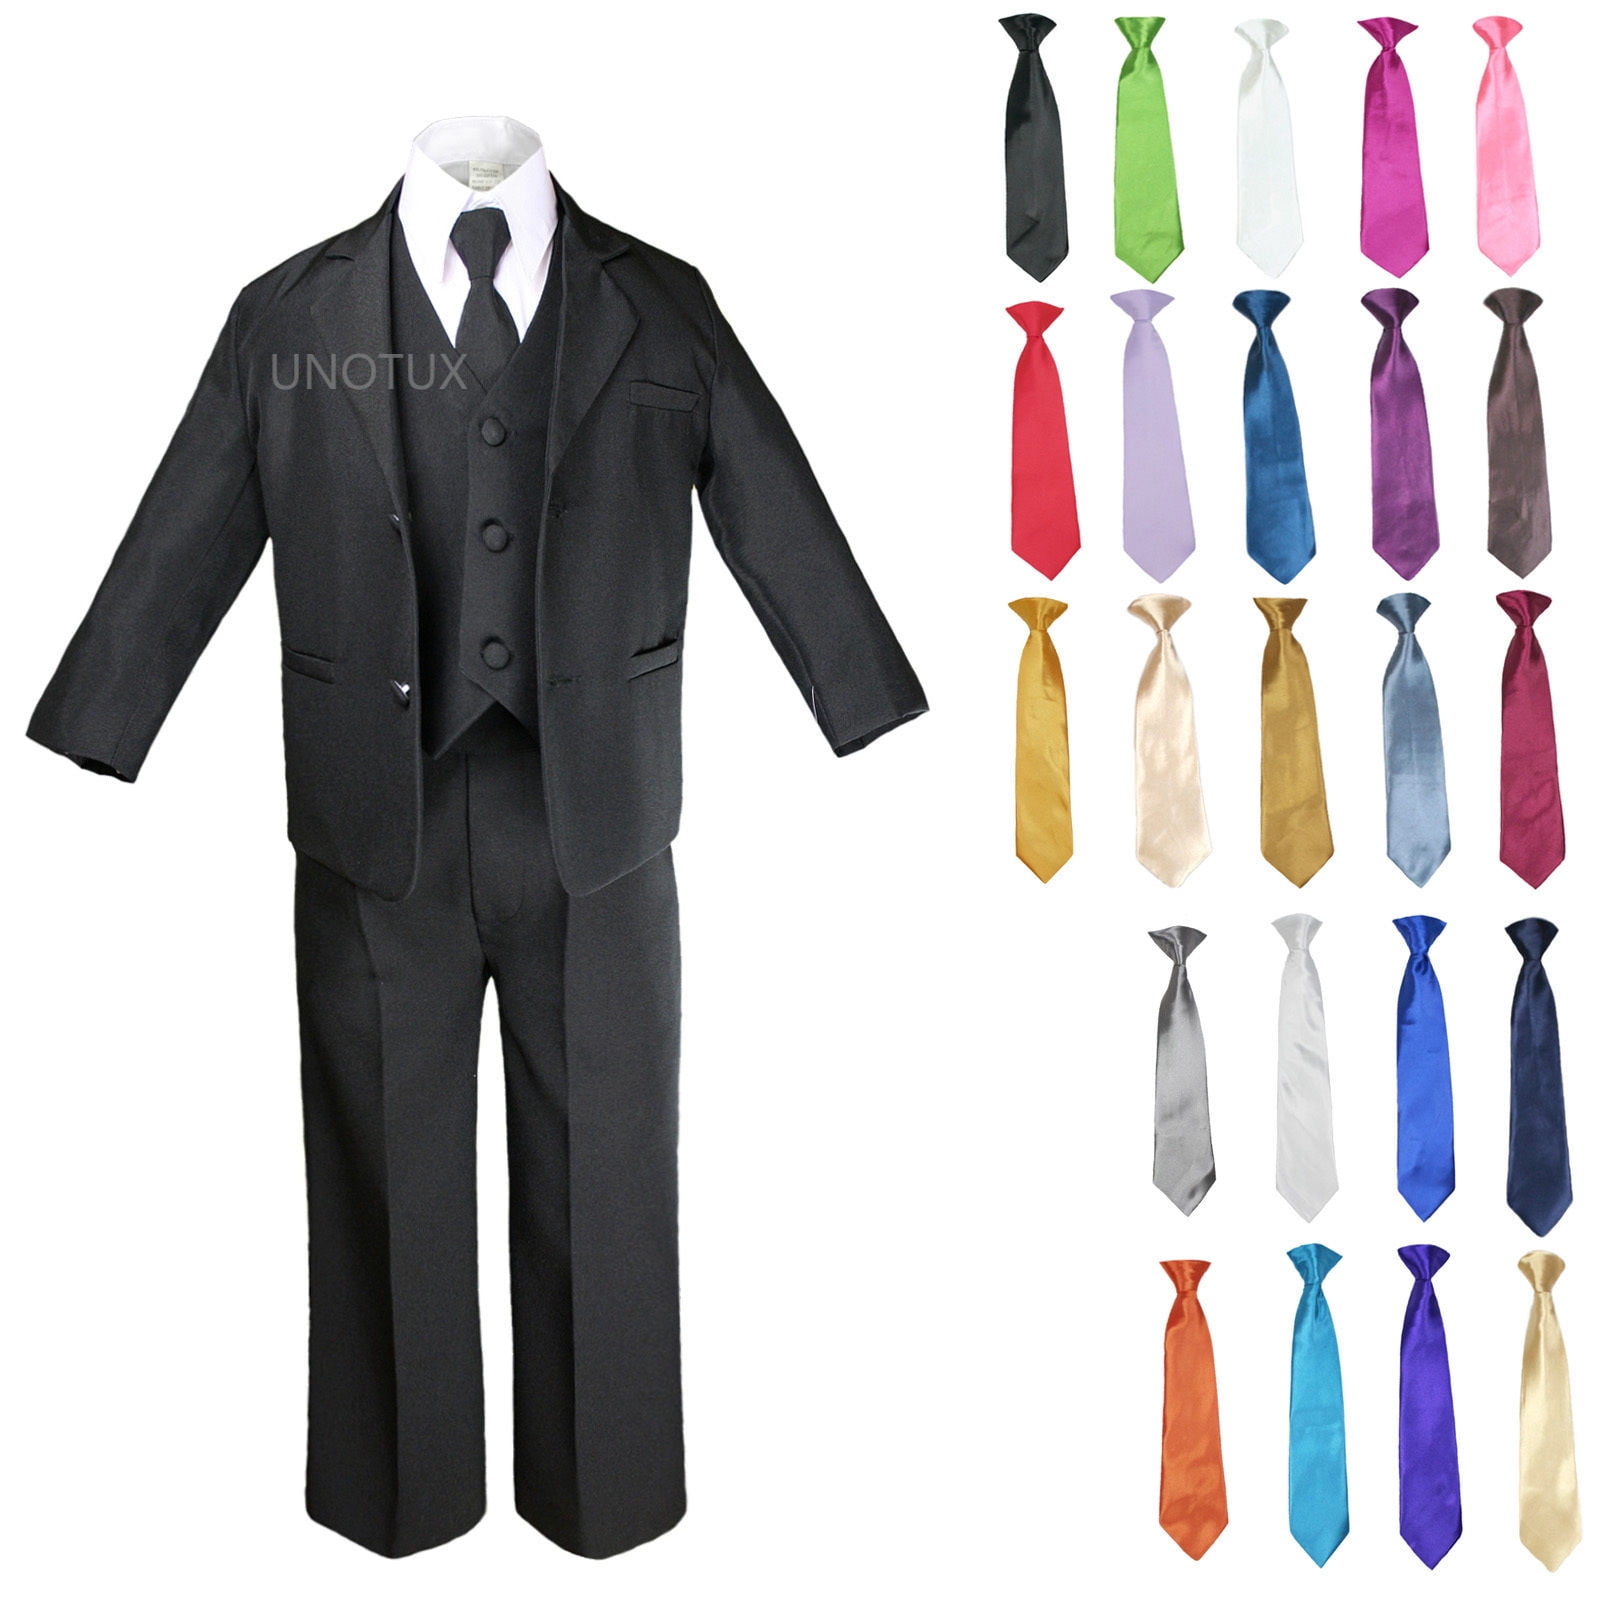 Children & Toddler SILVER SATIN VEST & TIE SET for Boy's Suit Tuxedo Sz 2T 14 